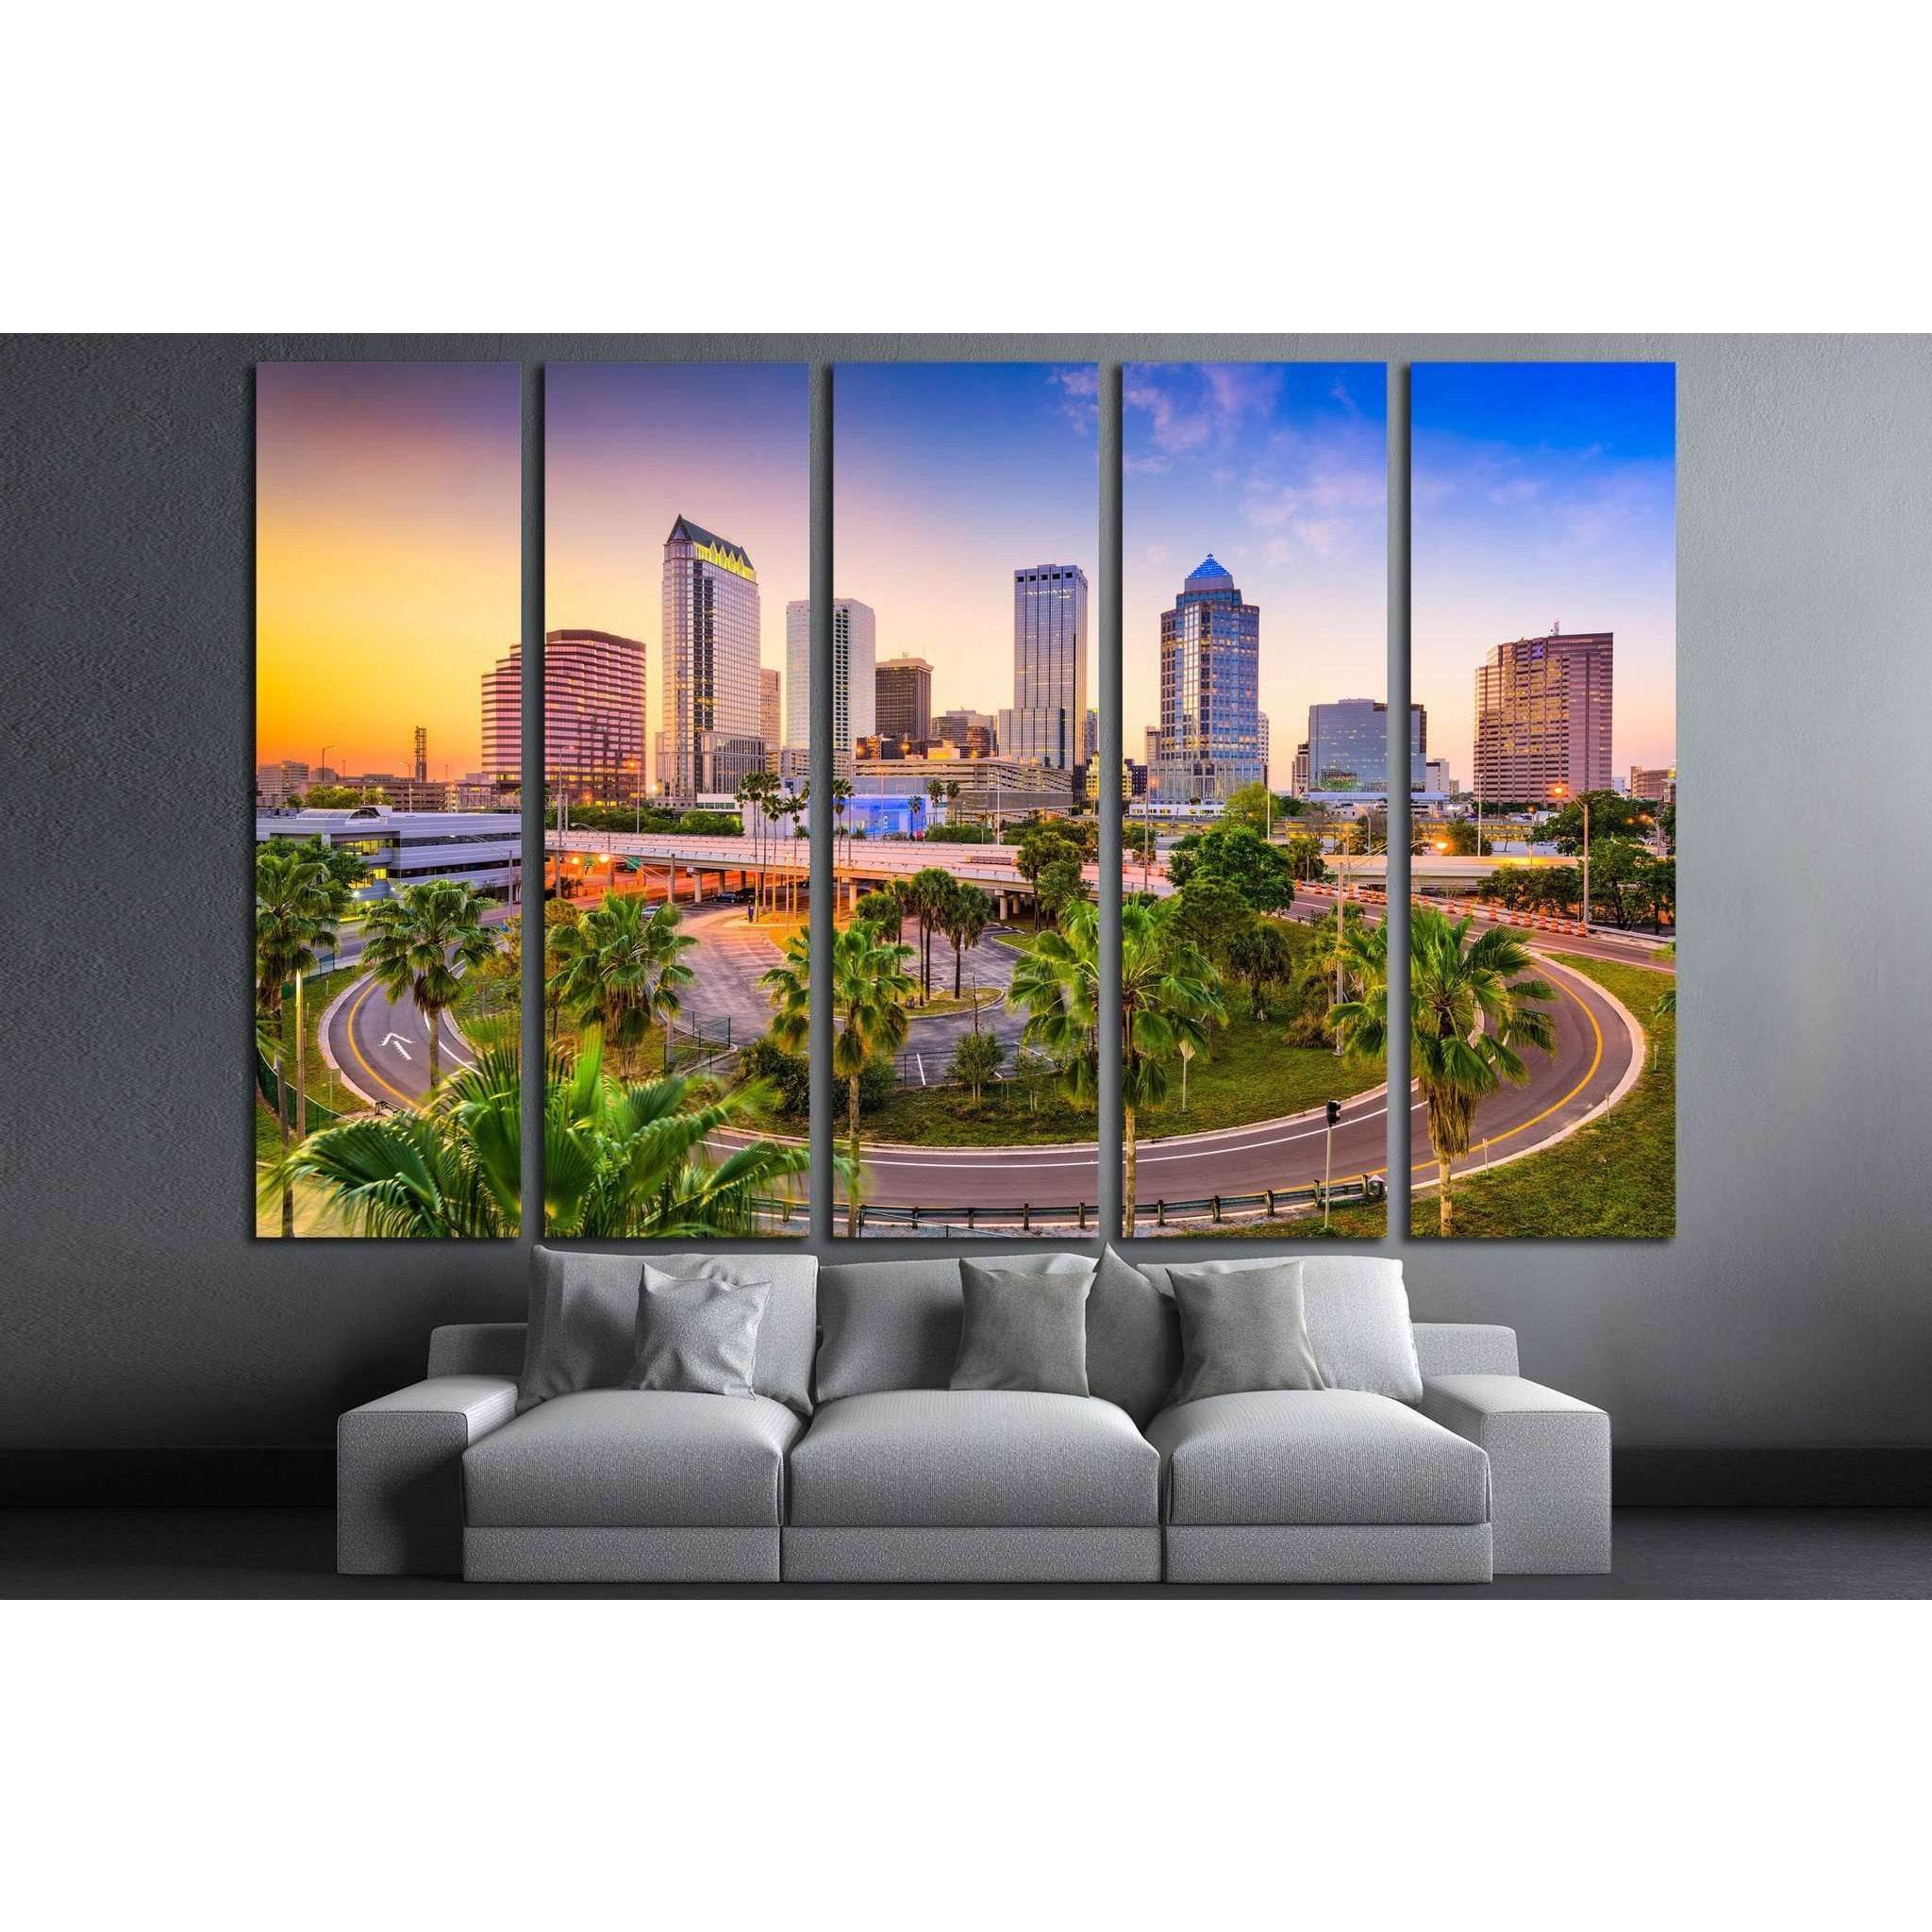 Tampa, Florida, USA downtown skyline №1236 Ready to Hang Canvas Print